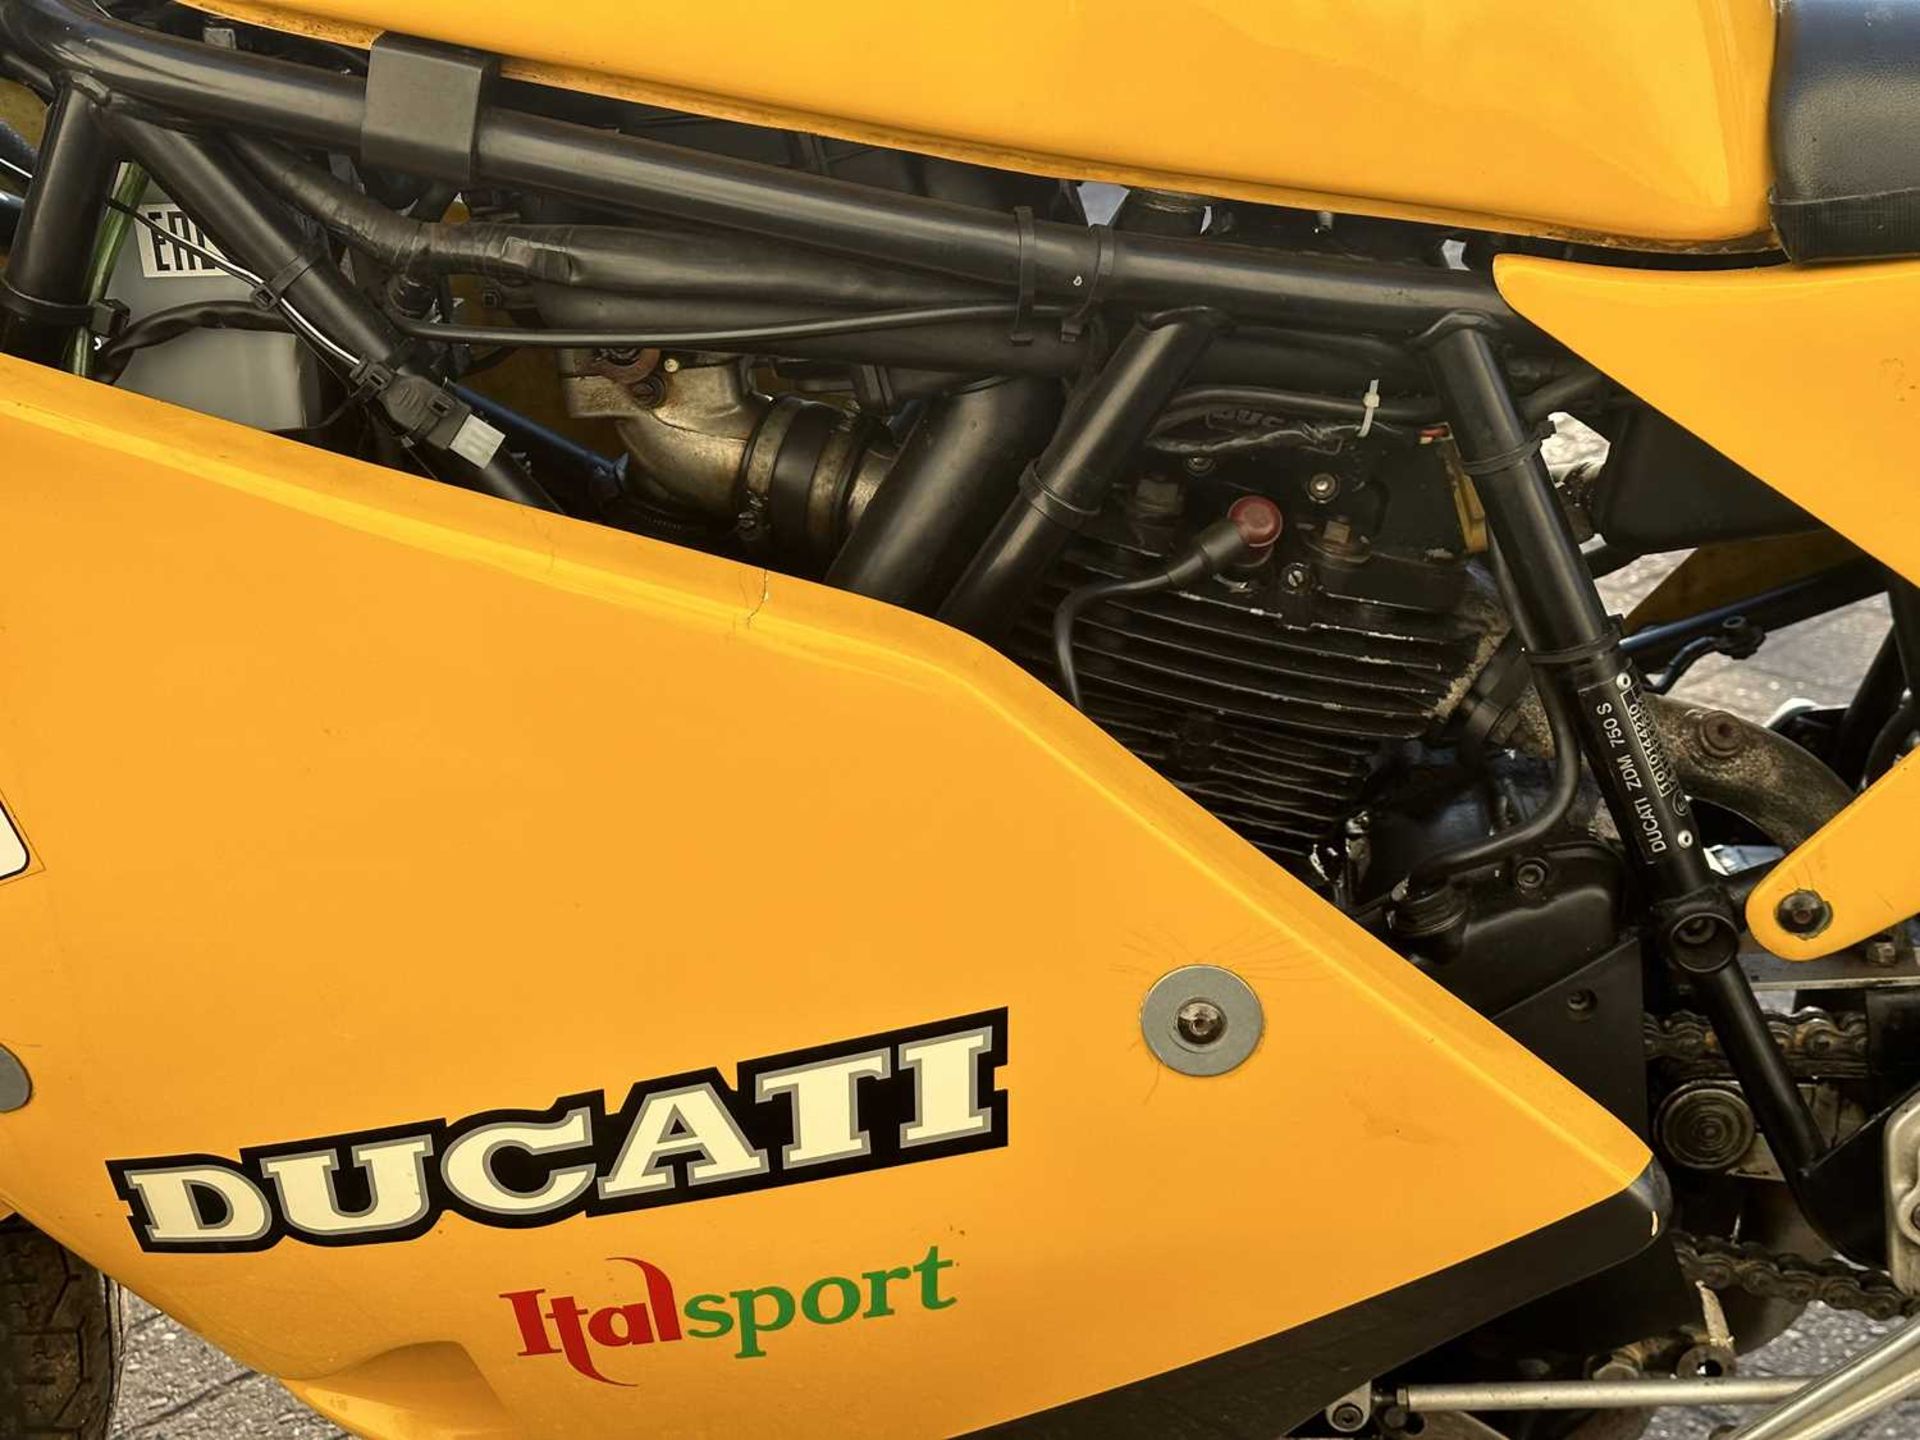 1990 Ducati 750 Sport Desmo - Image 15 of 17